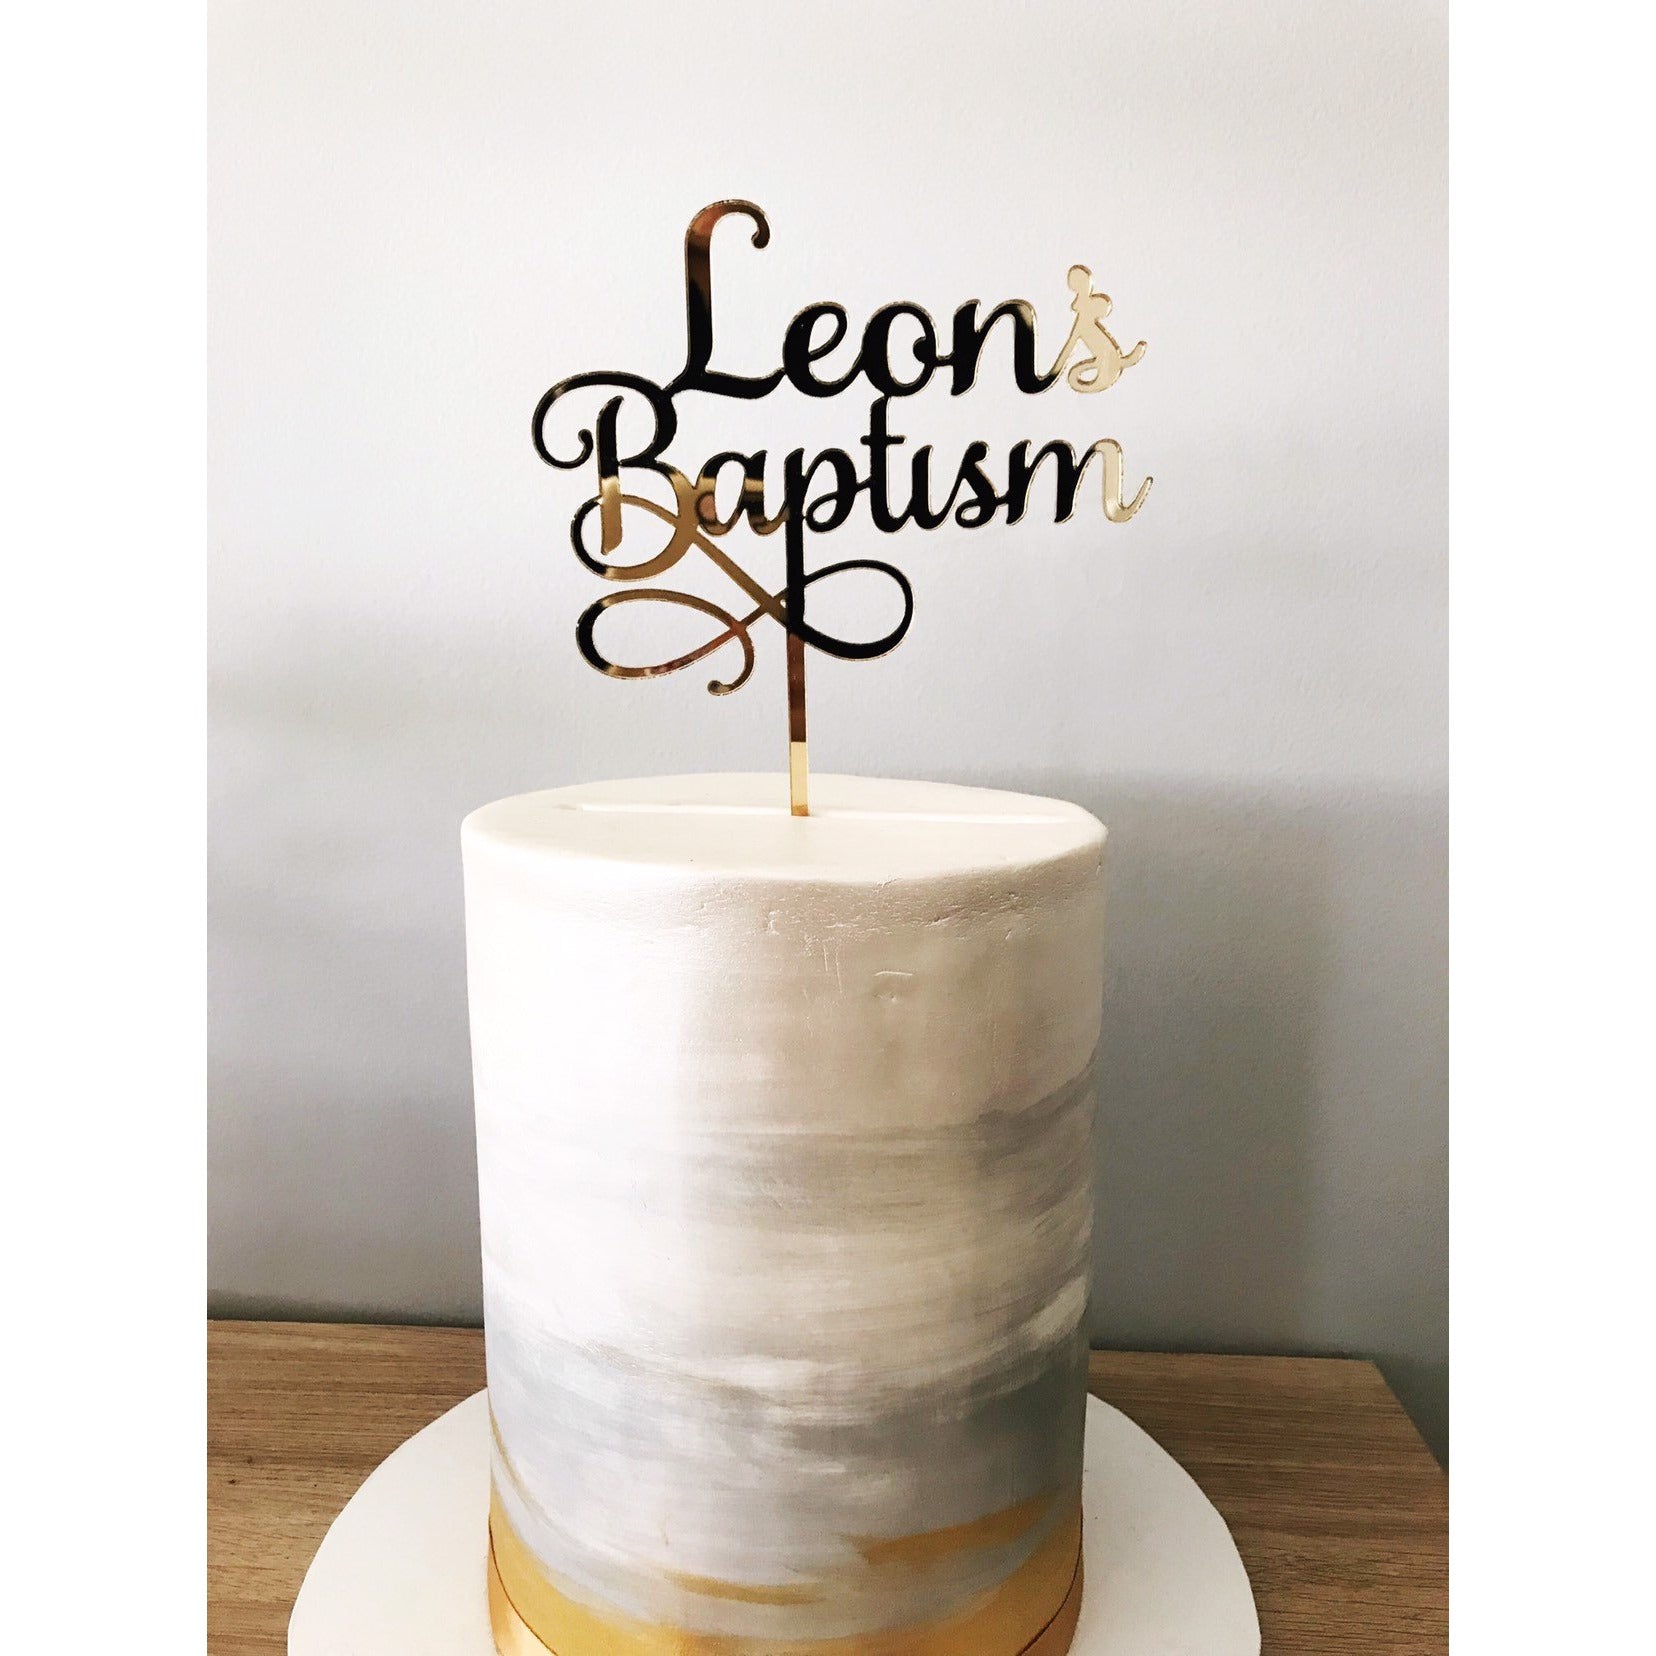 Christening cake tutorials - How to make a Baptism Cake